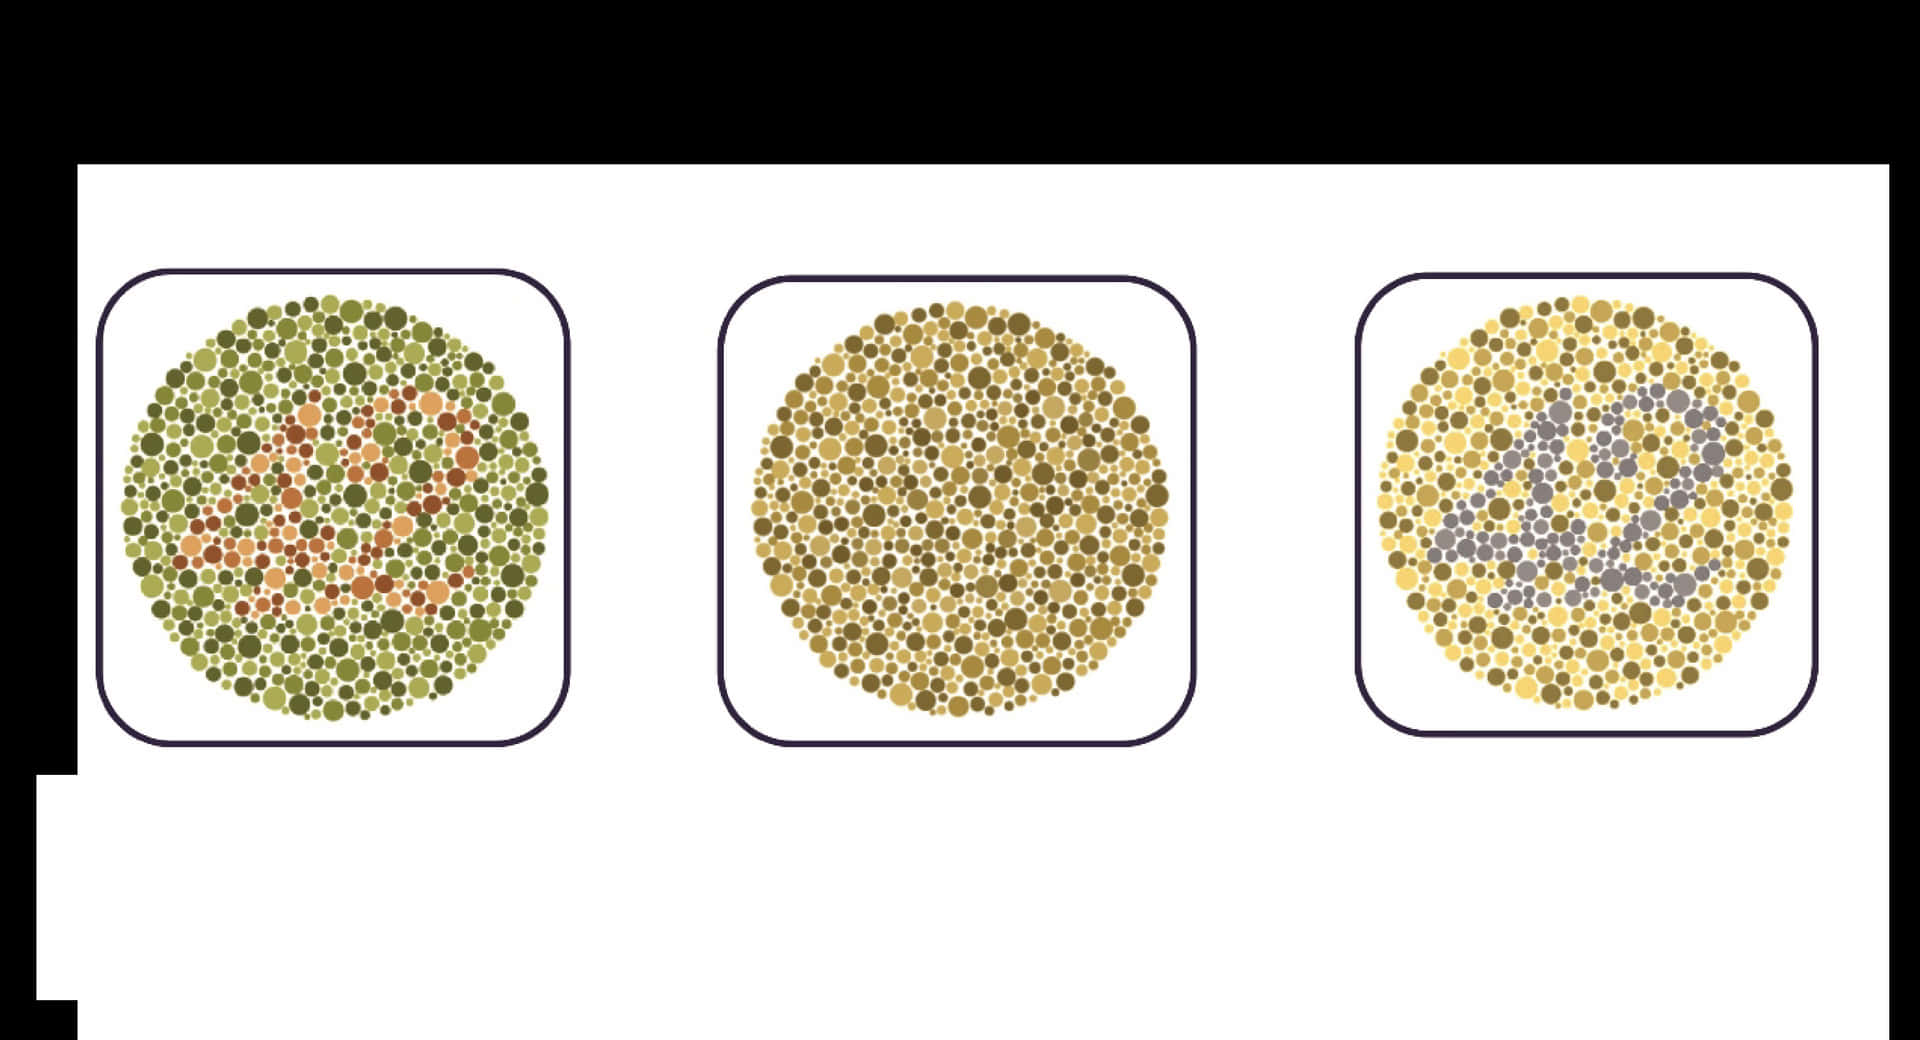 Vierverschiedene Arten Von Samen In Verschiedenen Farben